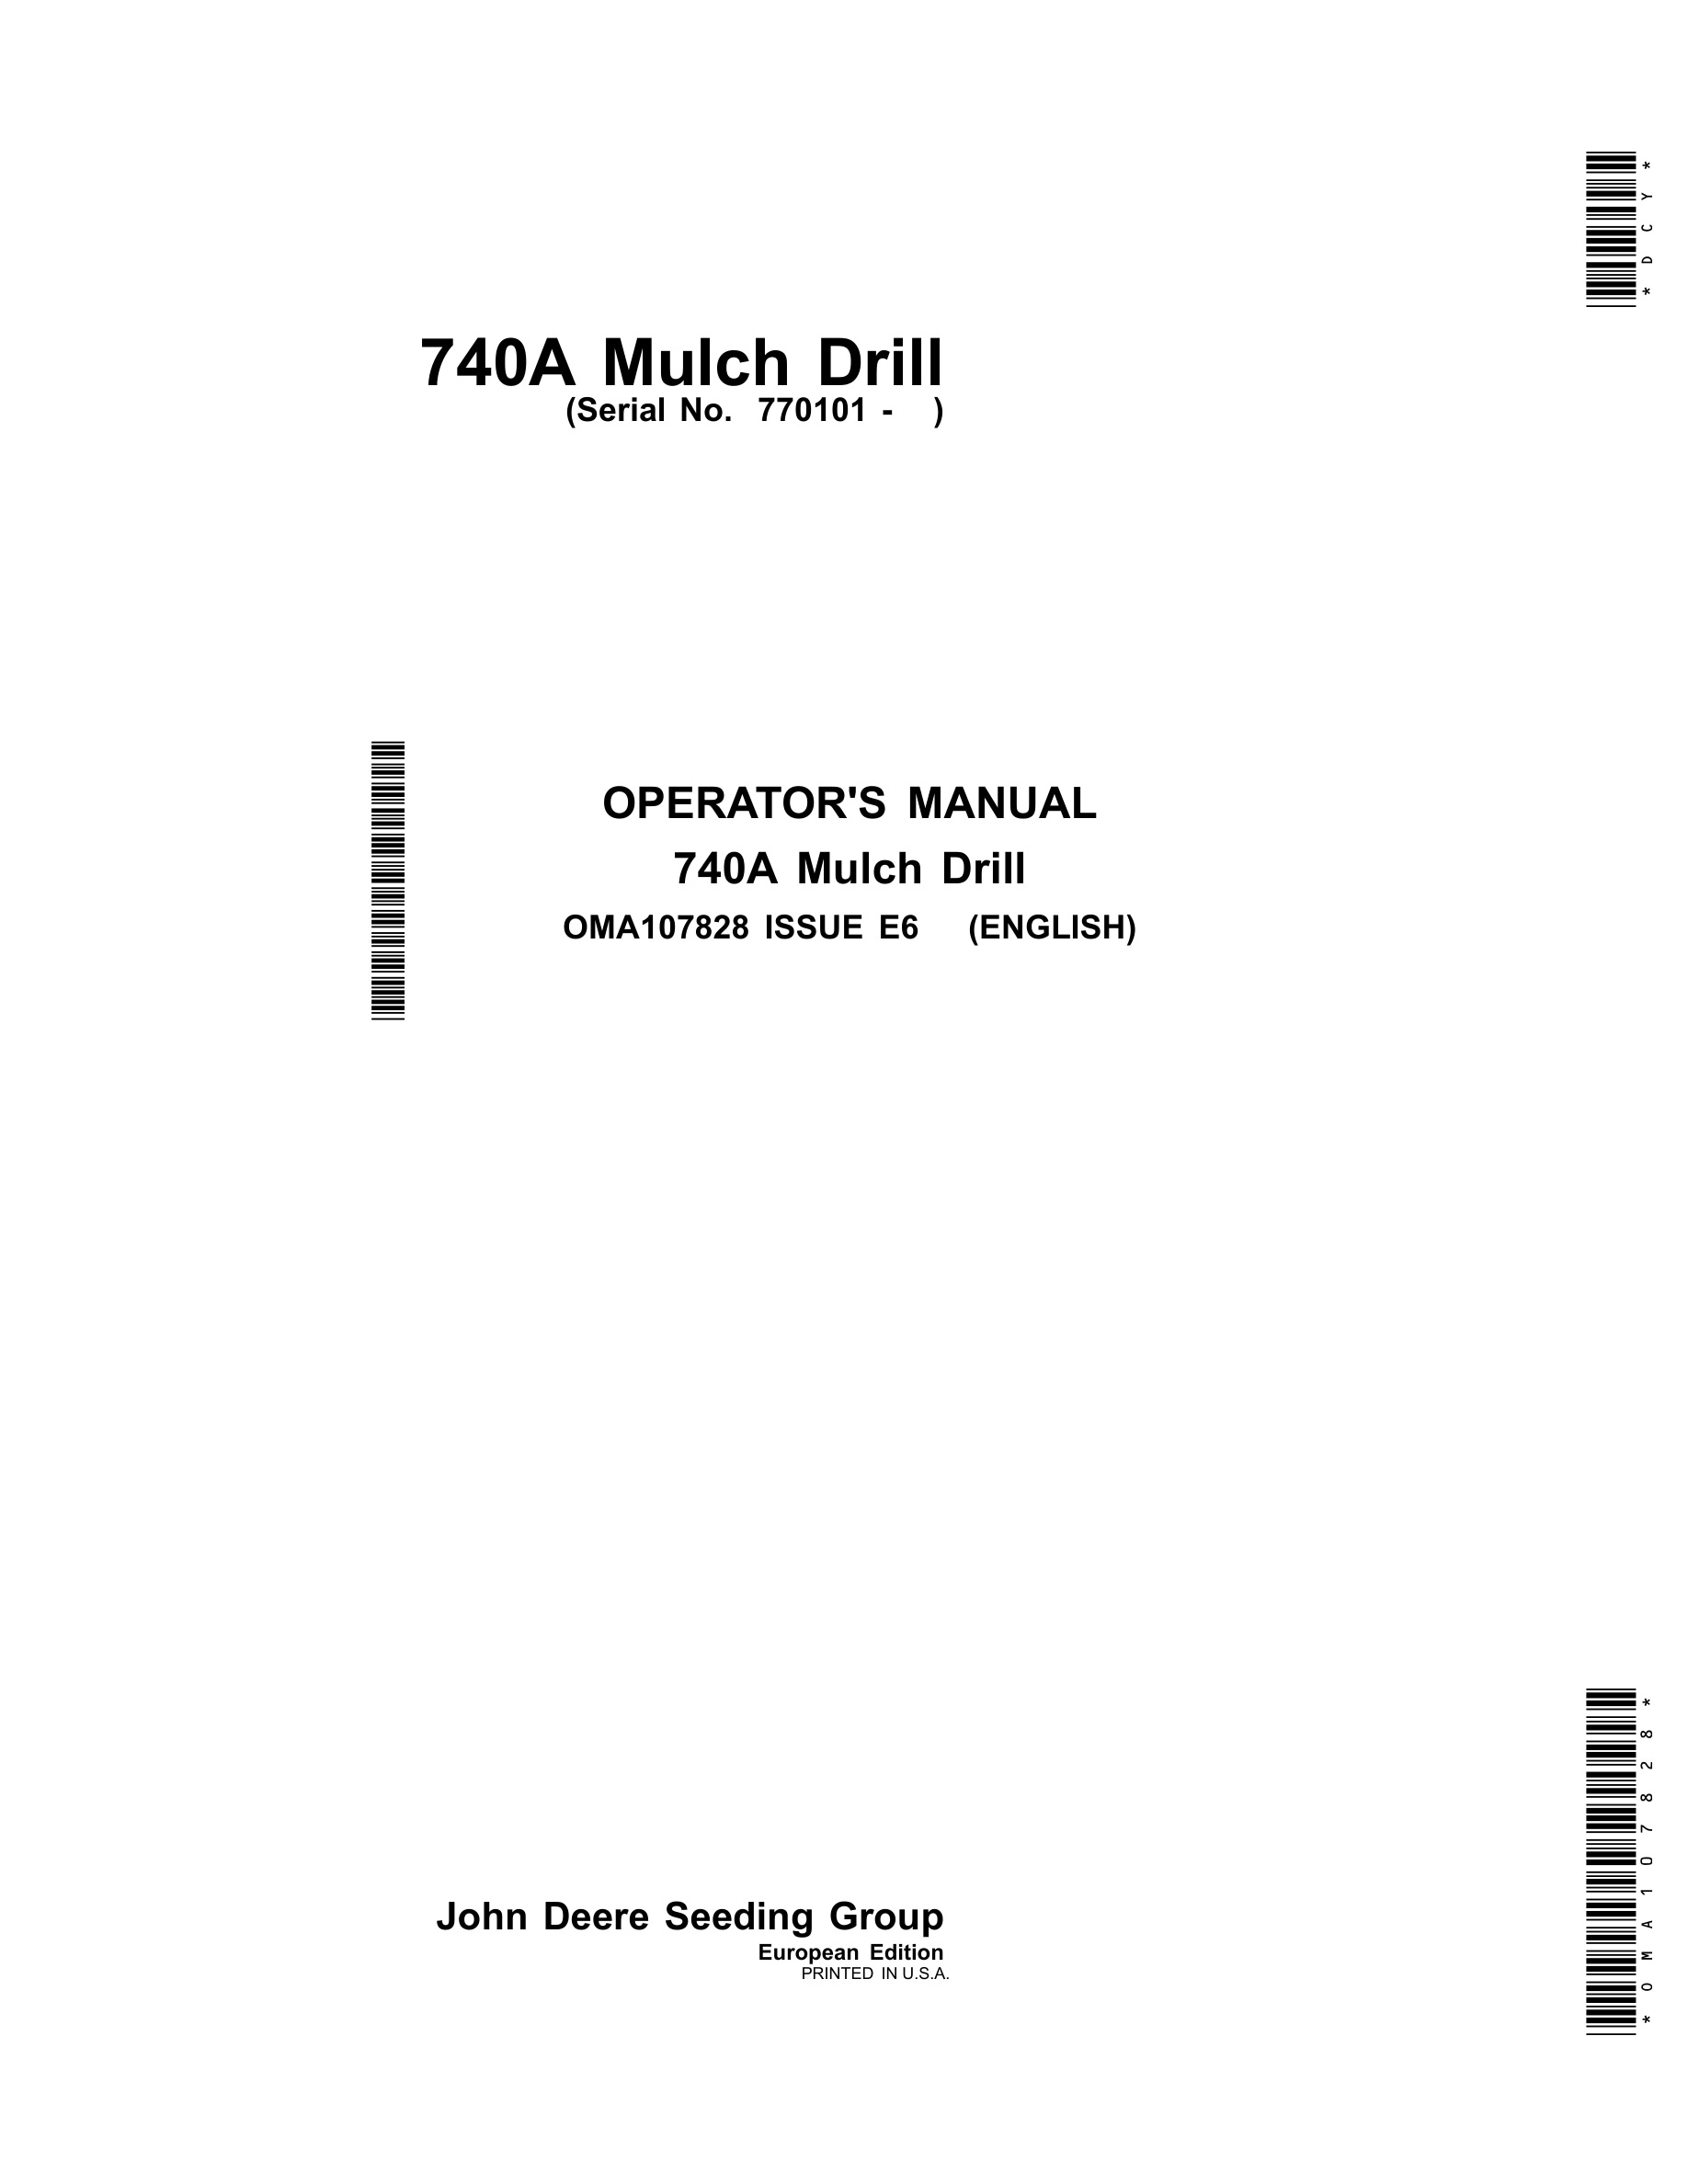 John Deere 740A Mulch Drill Operator Manual OMA107828-1